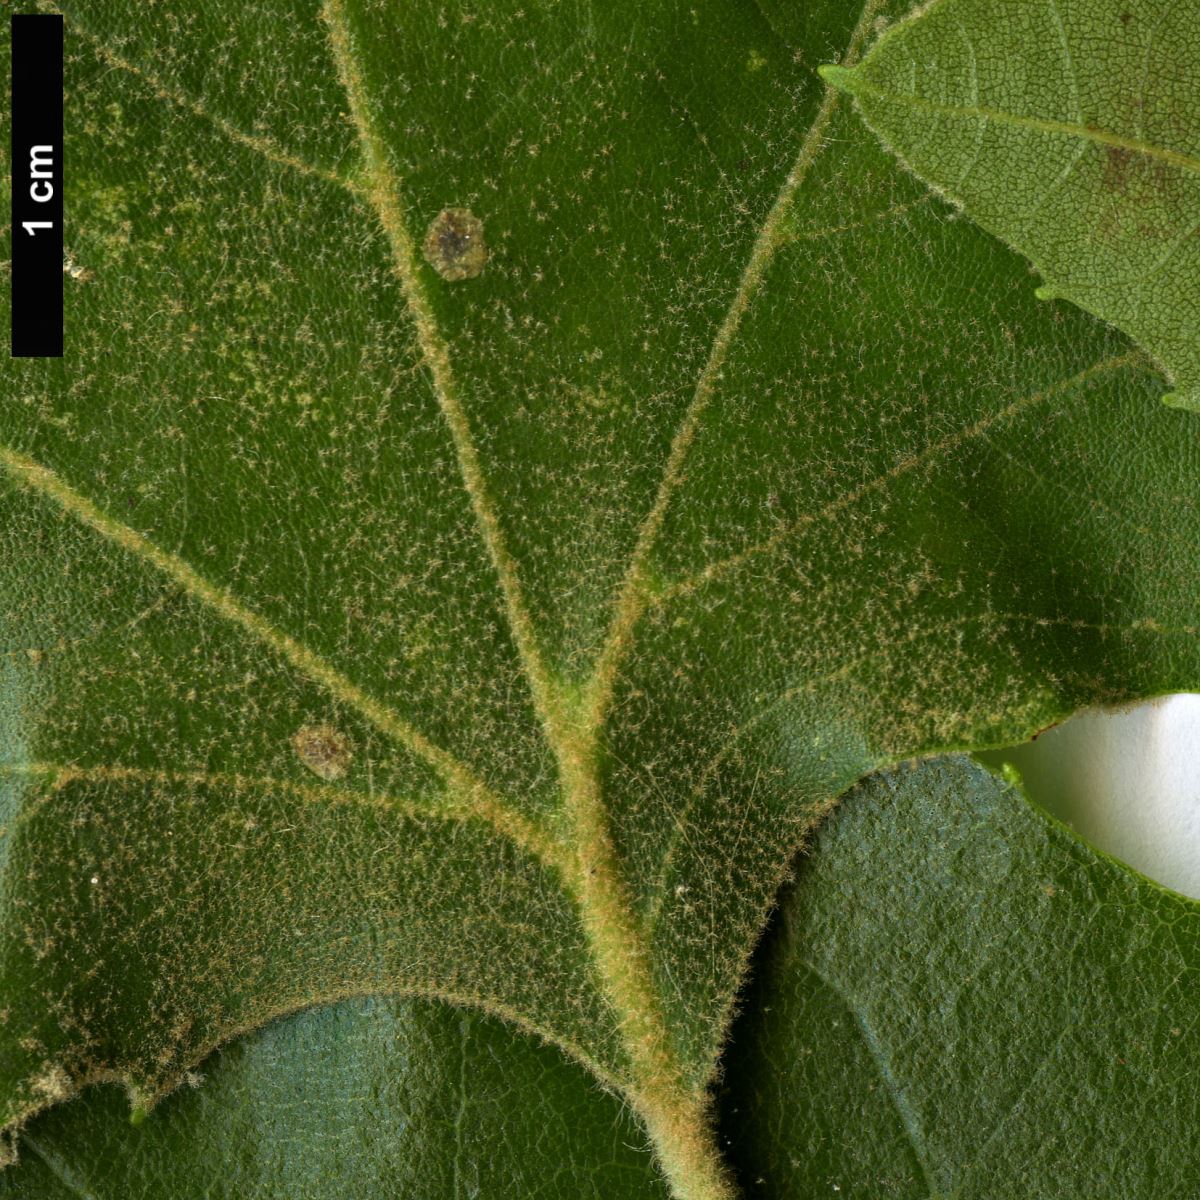 High resolution image: Family: Platanaceae - Genus: Platanus - Taxon: ×hispanica (P.occidentalis × P.orientalis)